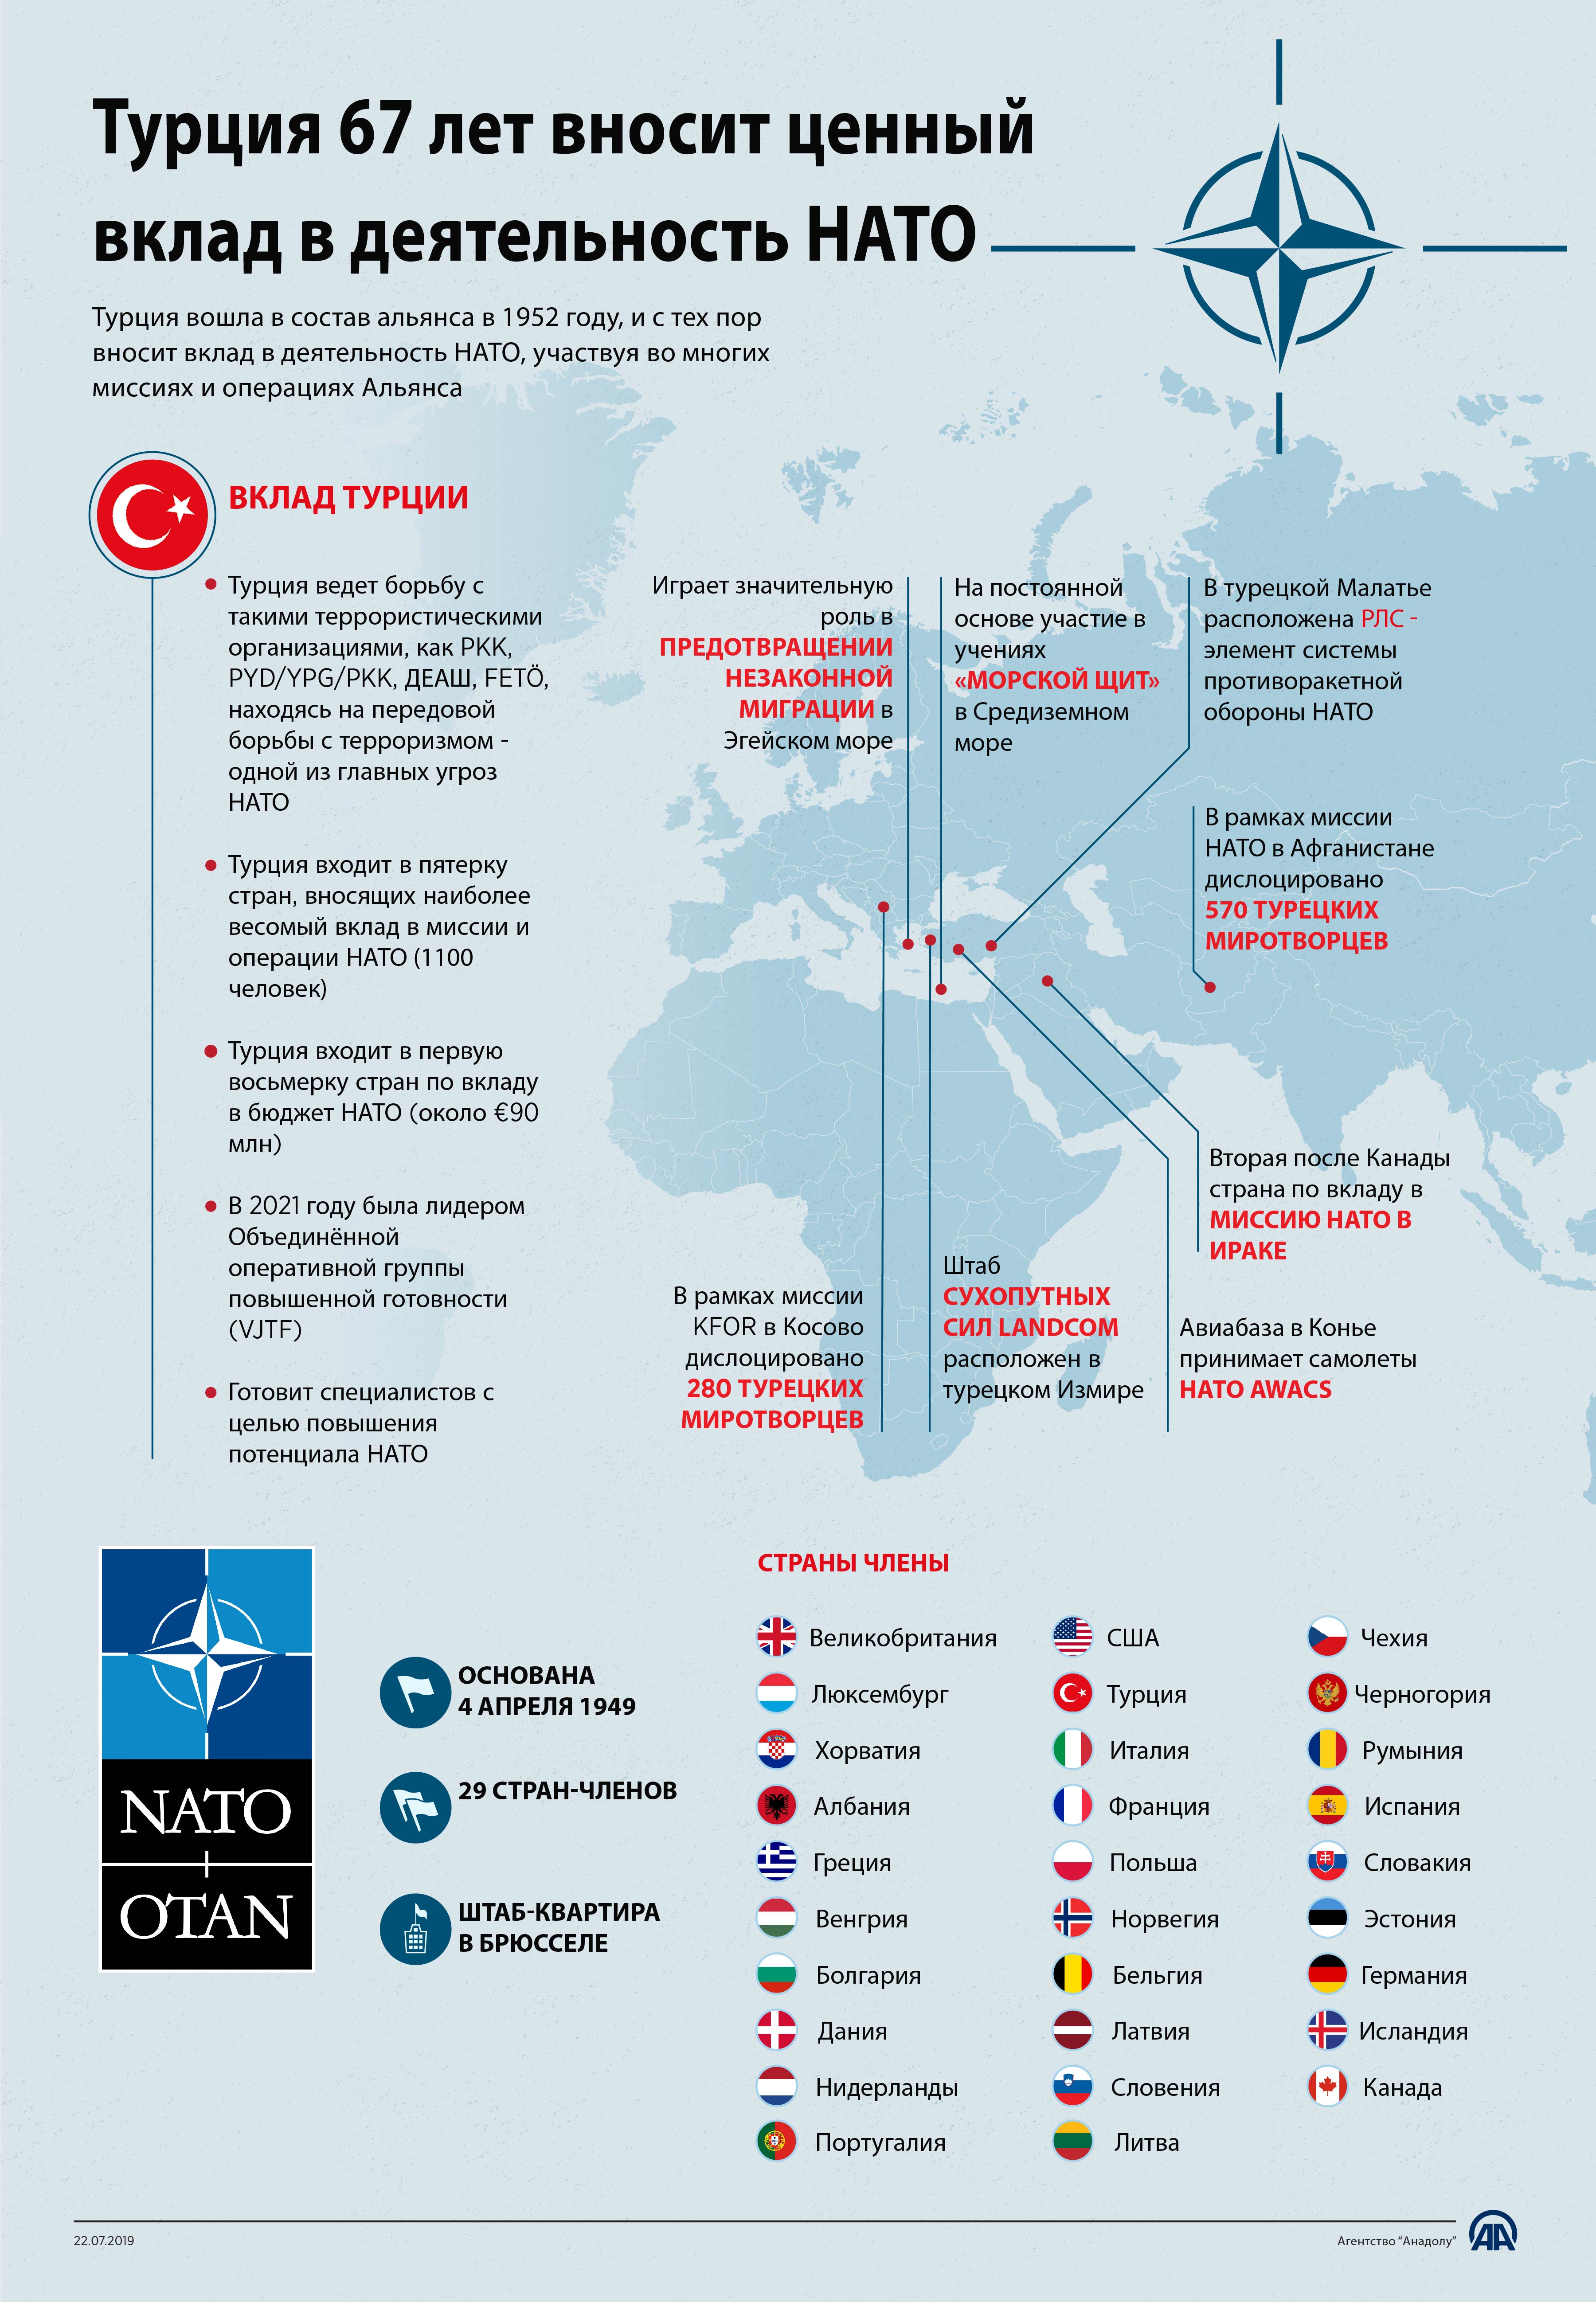 Турция 67 лет вносит ценный вклад в деятельность НАТО